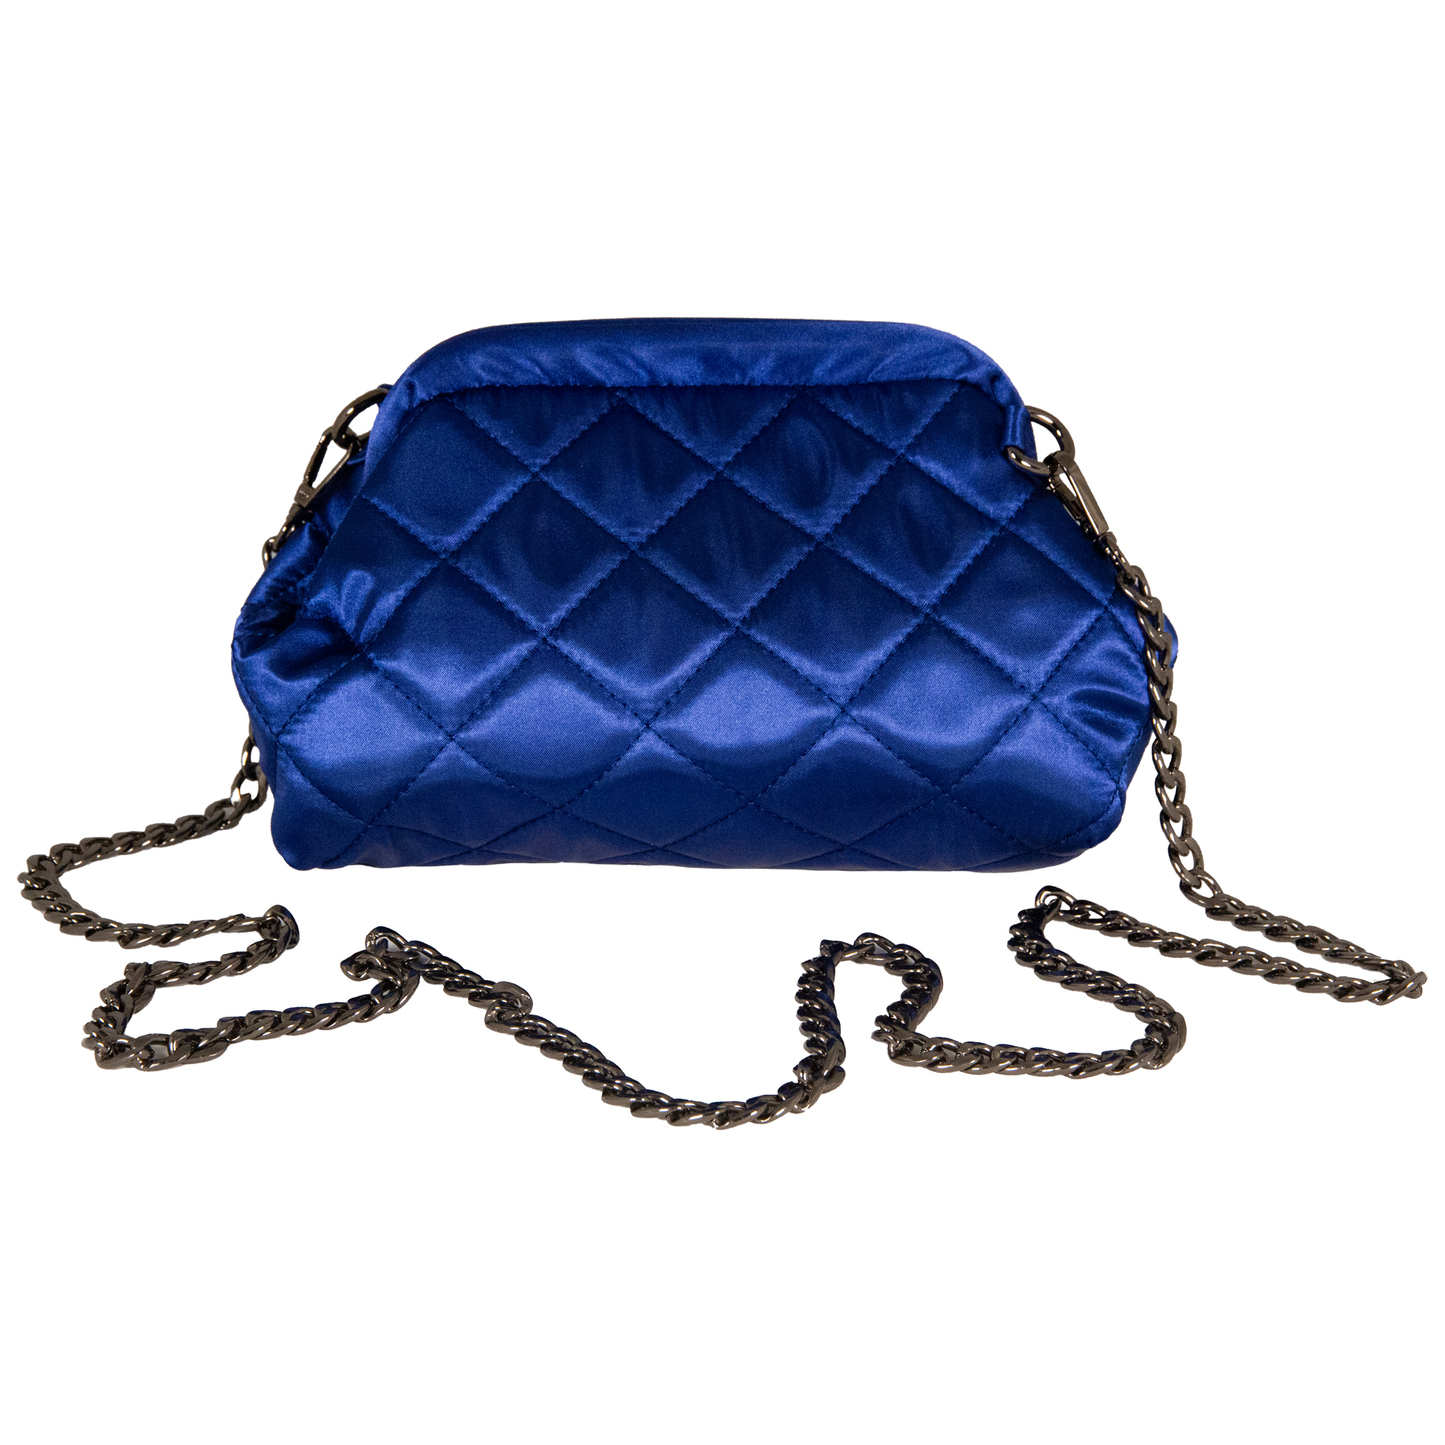 UNTRUE Women’s Haute Couture Chain Design Shoulder Evening Party Purse Clutch Bag Handbag Vegan Leather (FNNR) - Blue